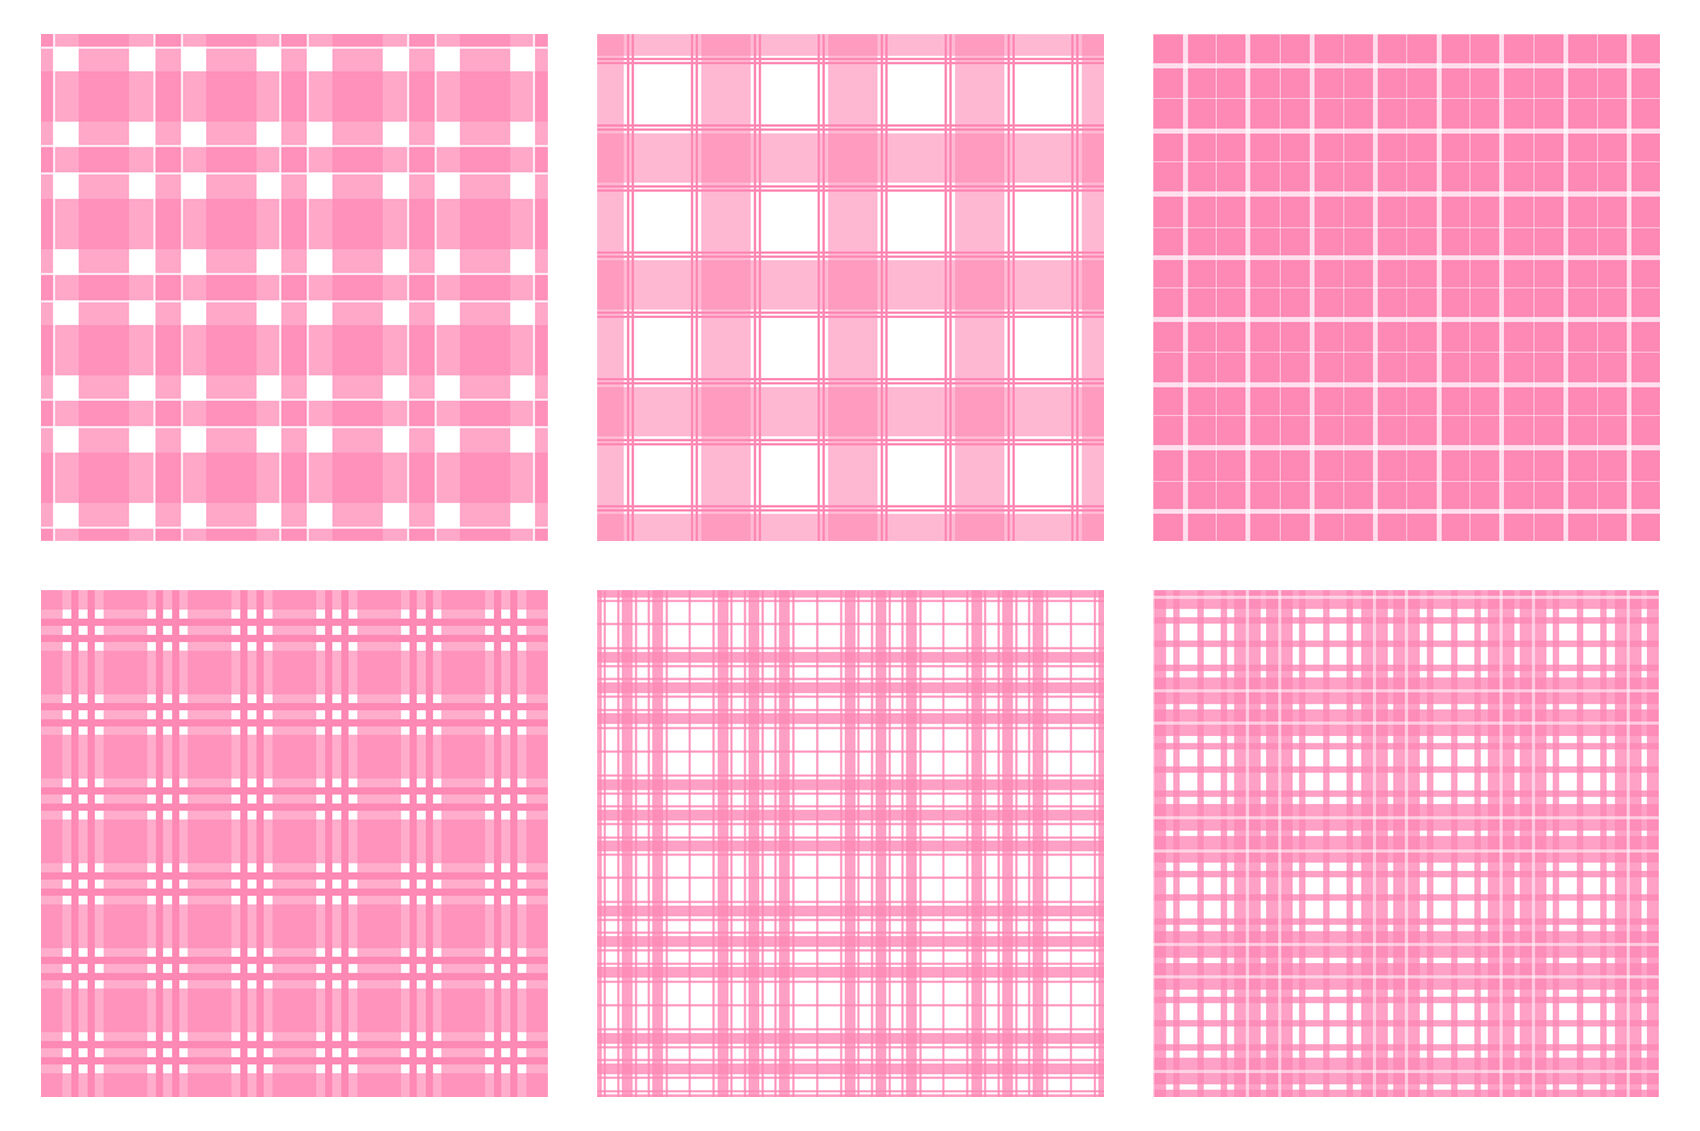 Pink Buffalo plaid pattern. Valentines Day Buffalo plaid SVG By